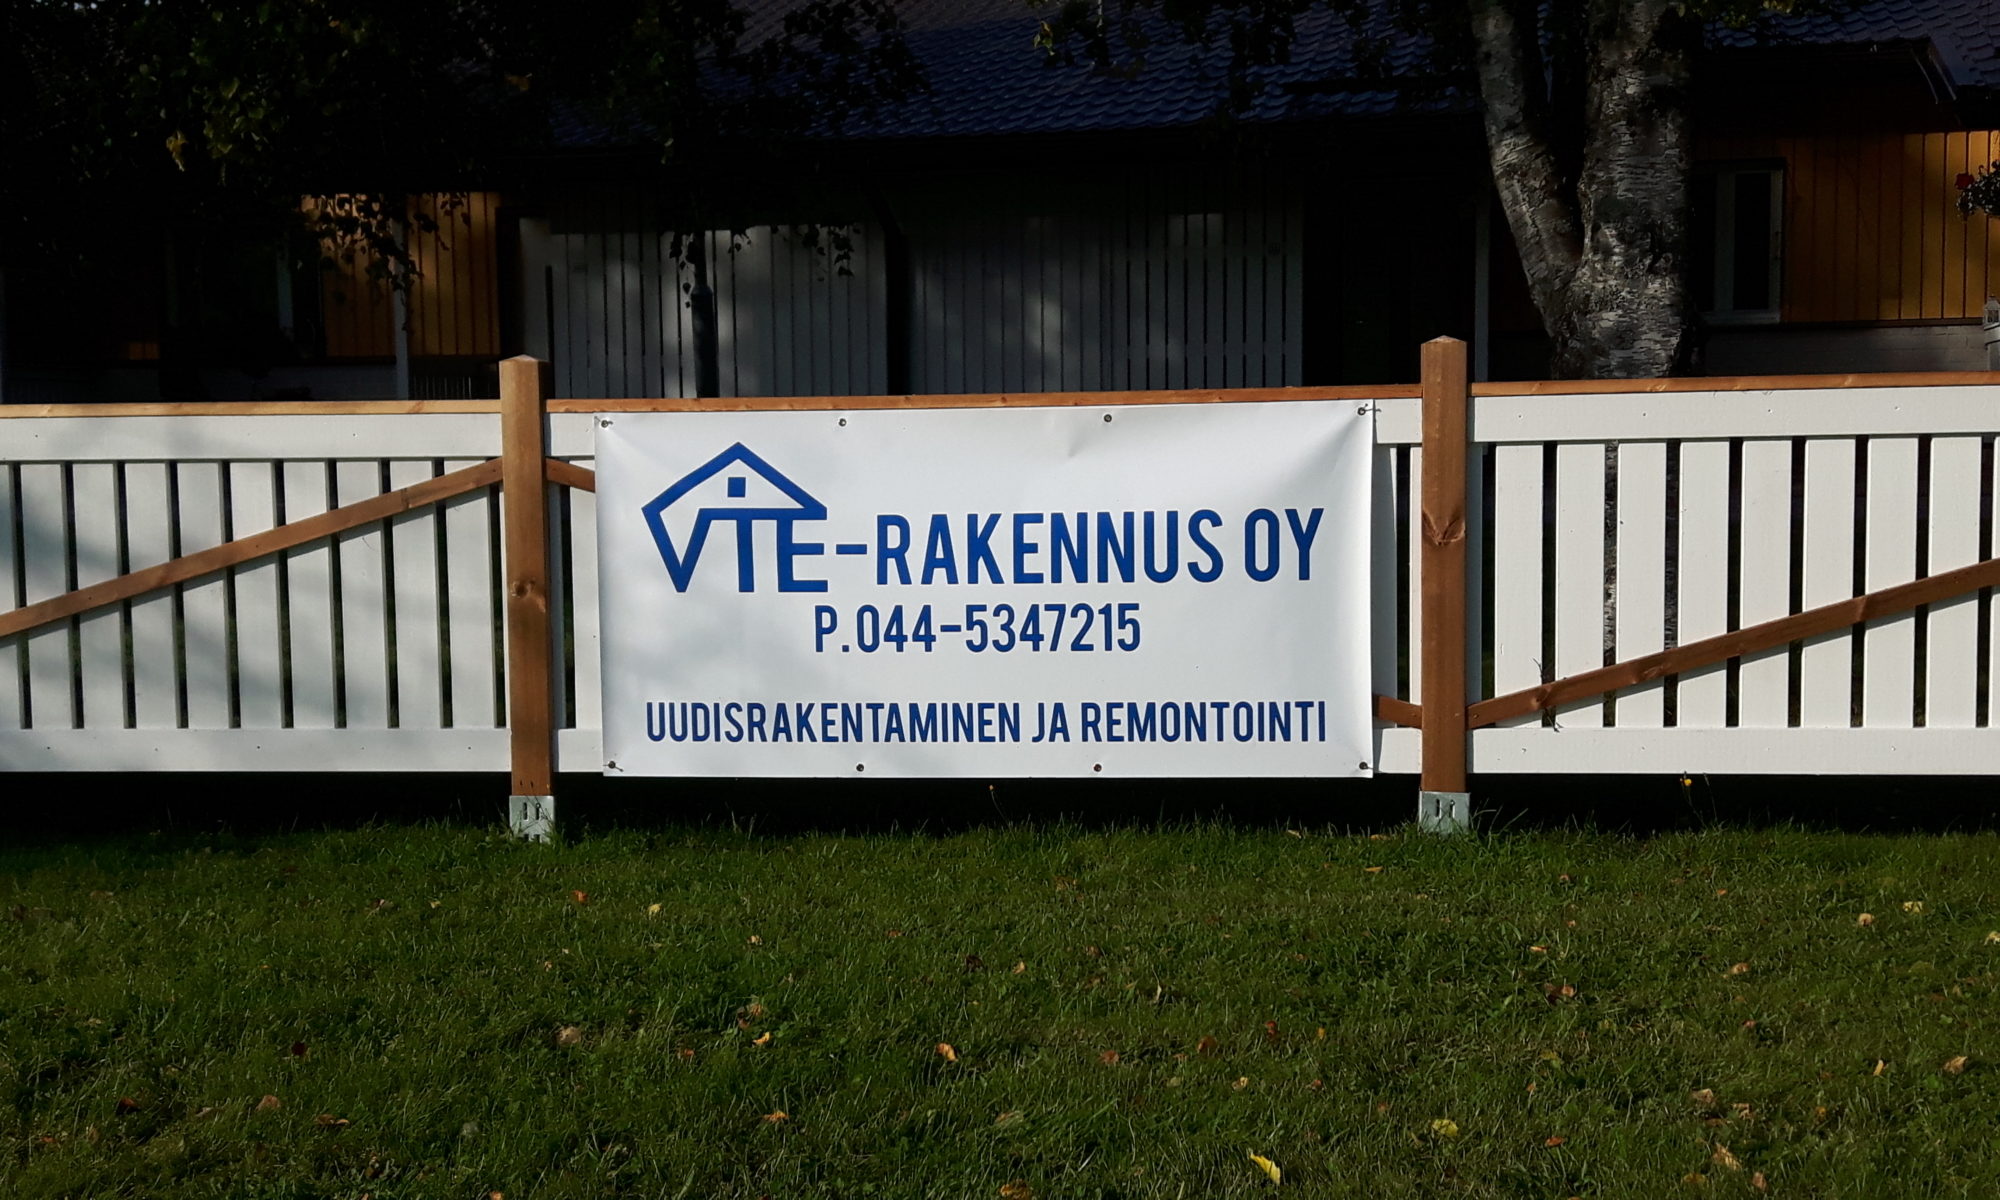 VTE-Rakennus Oy